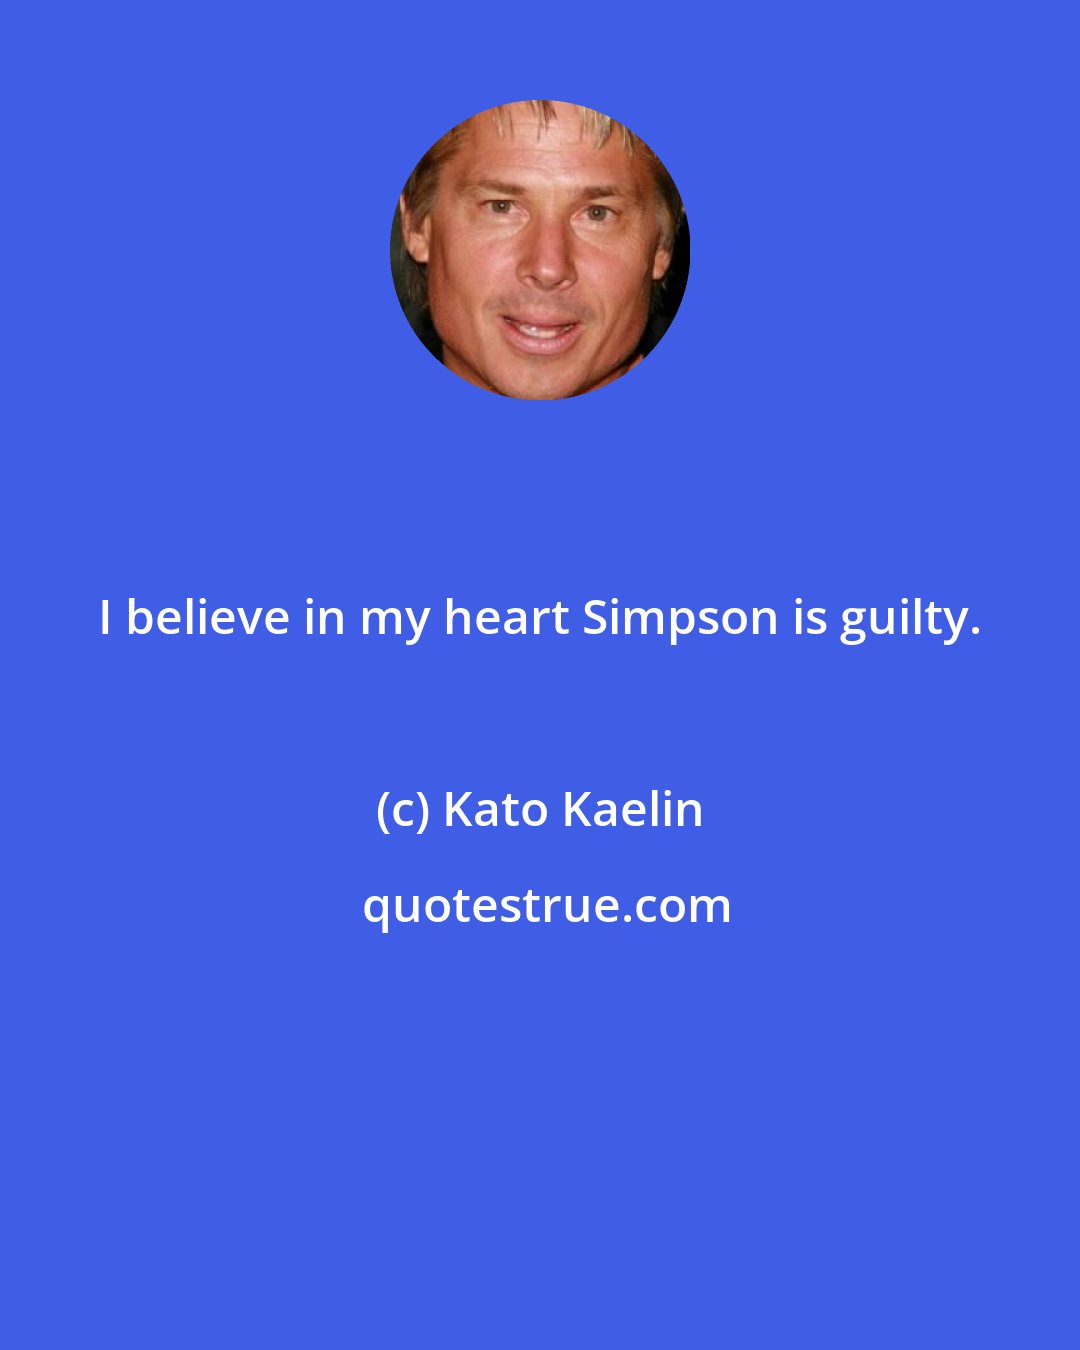 Kato Kaelin: I believe in my heart Simpson is guilty.